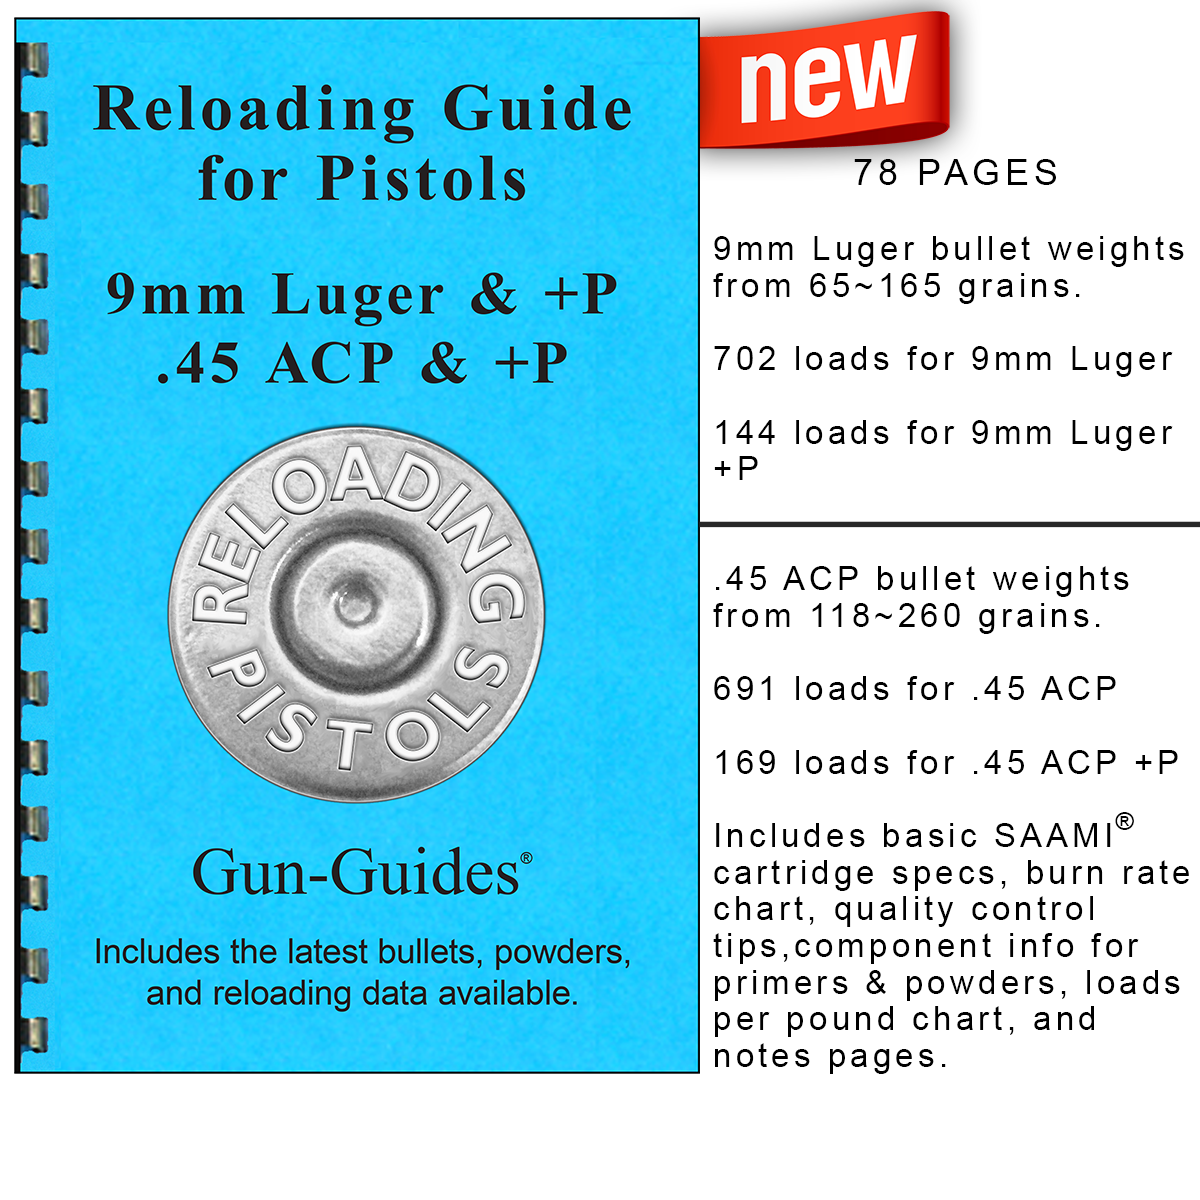 Reloading Guide - Pistols Gun-Guides® - NEW 2019!